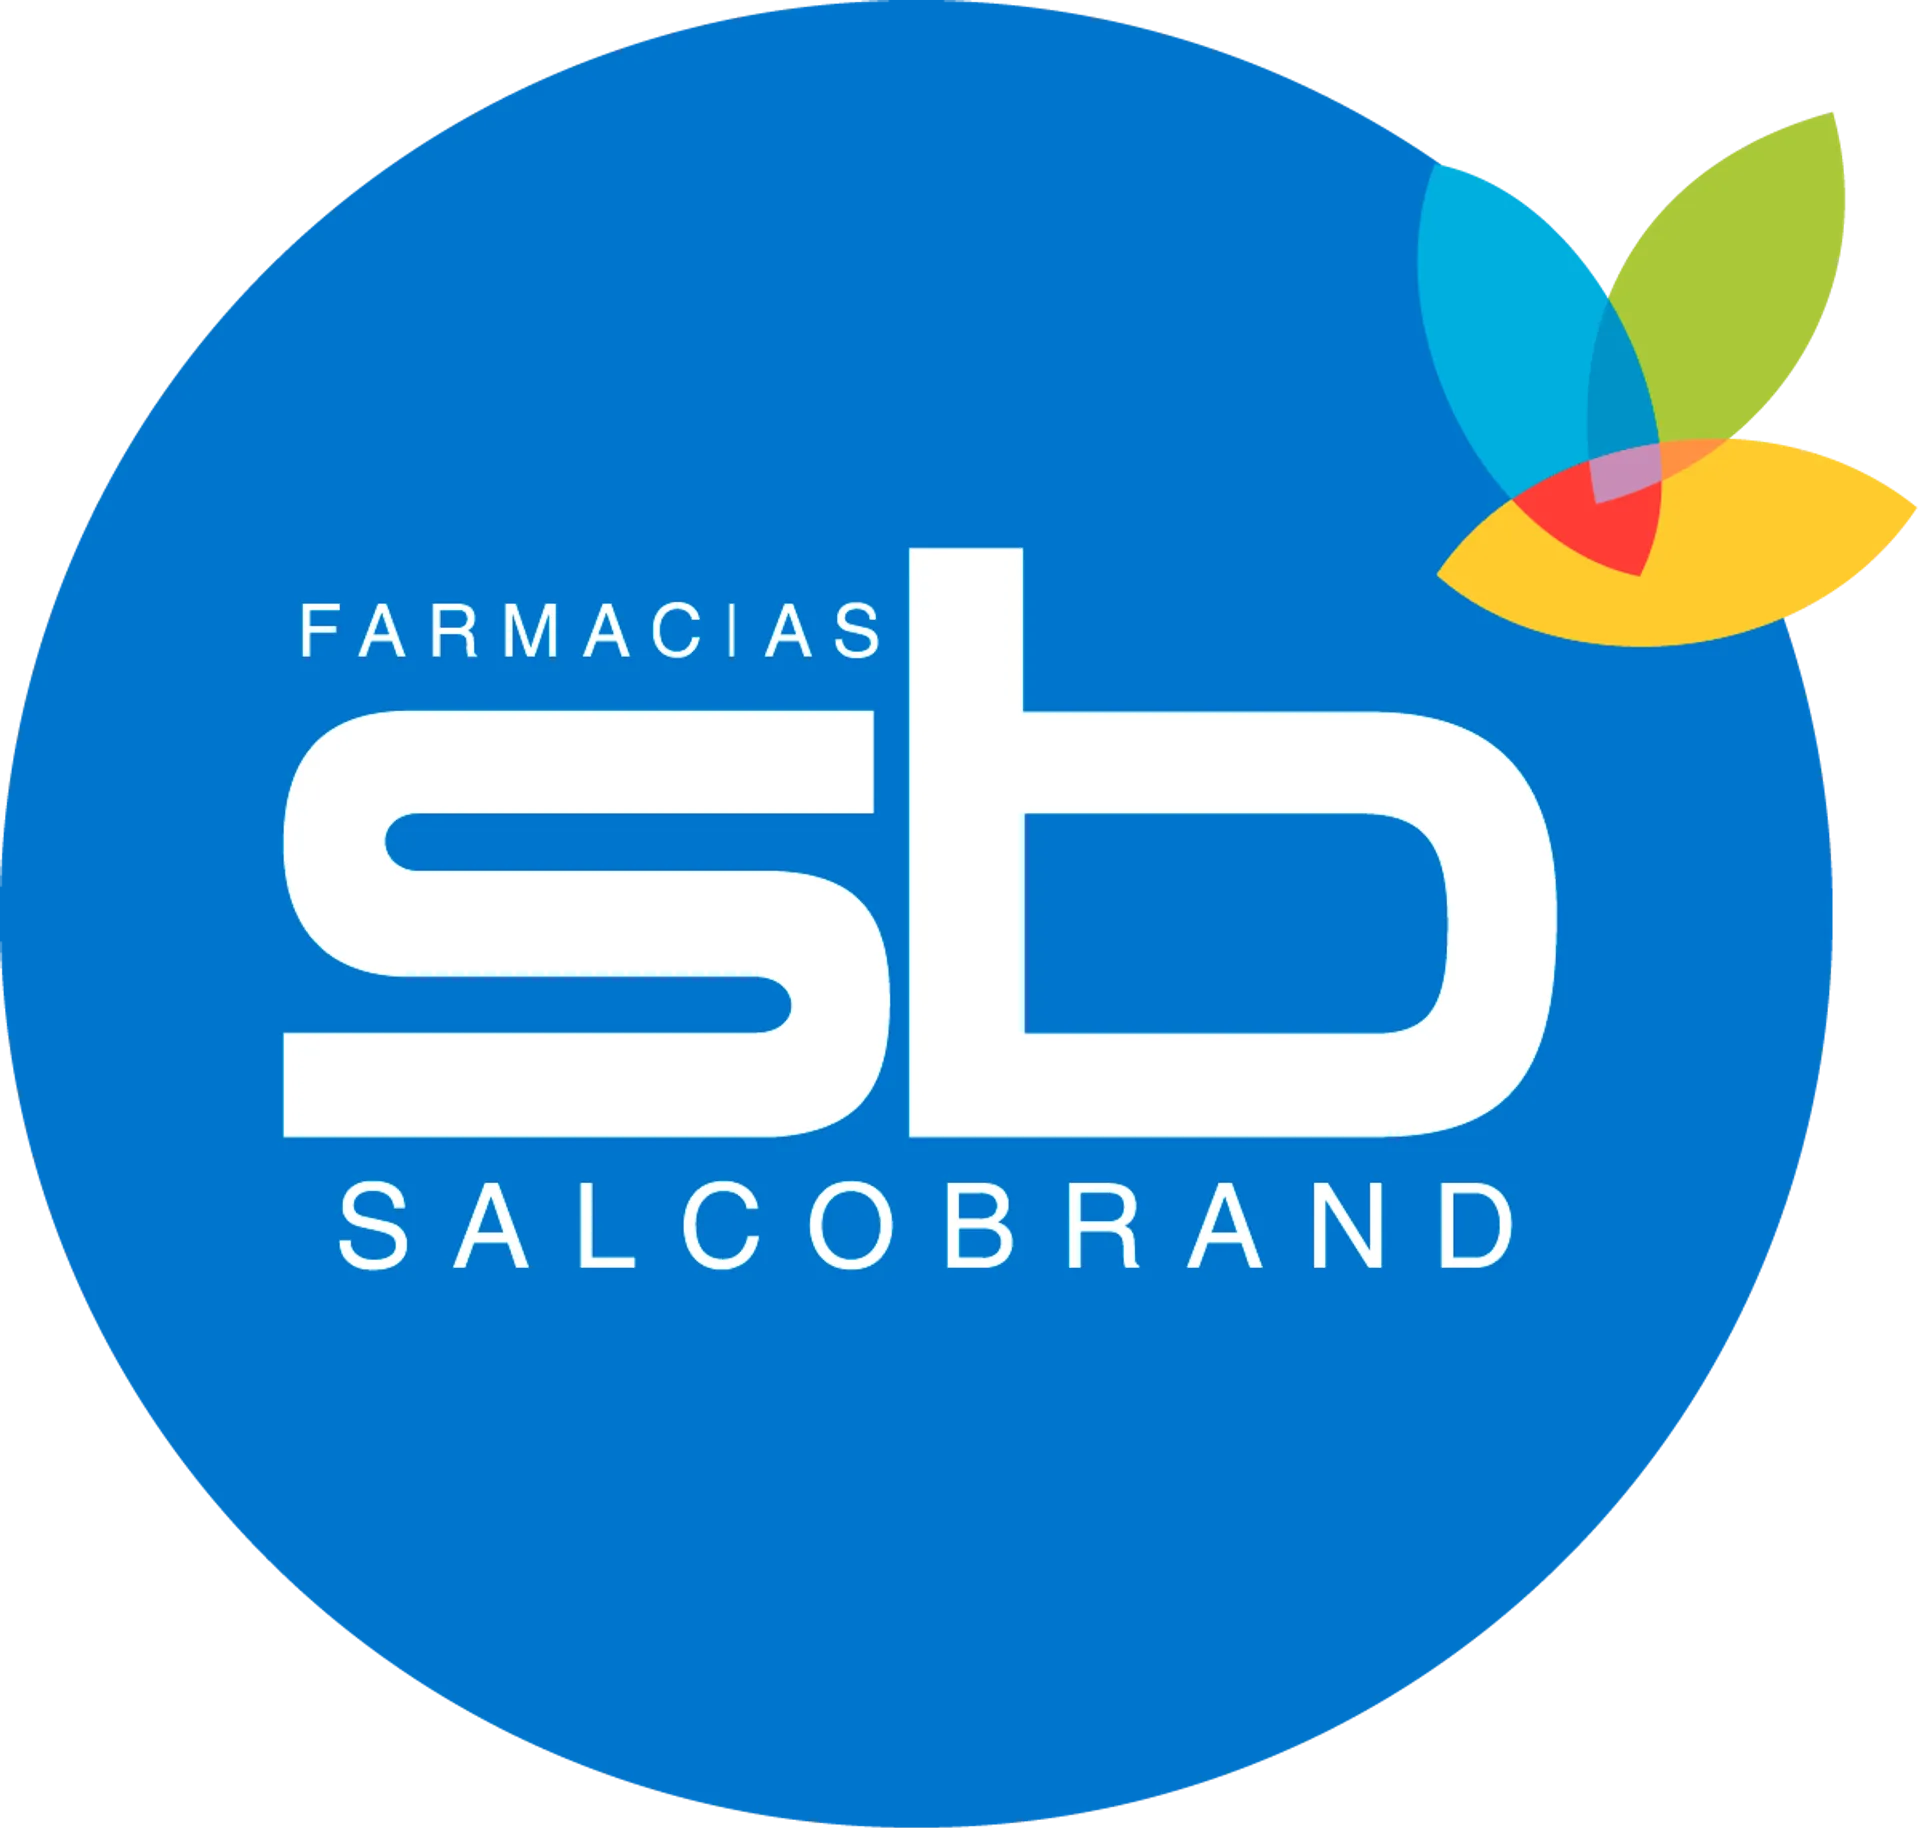 SALCOBRAND logo de catálogo